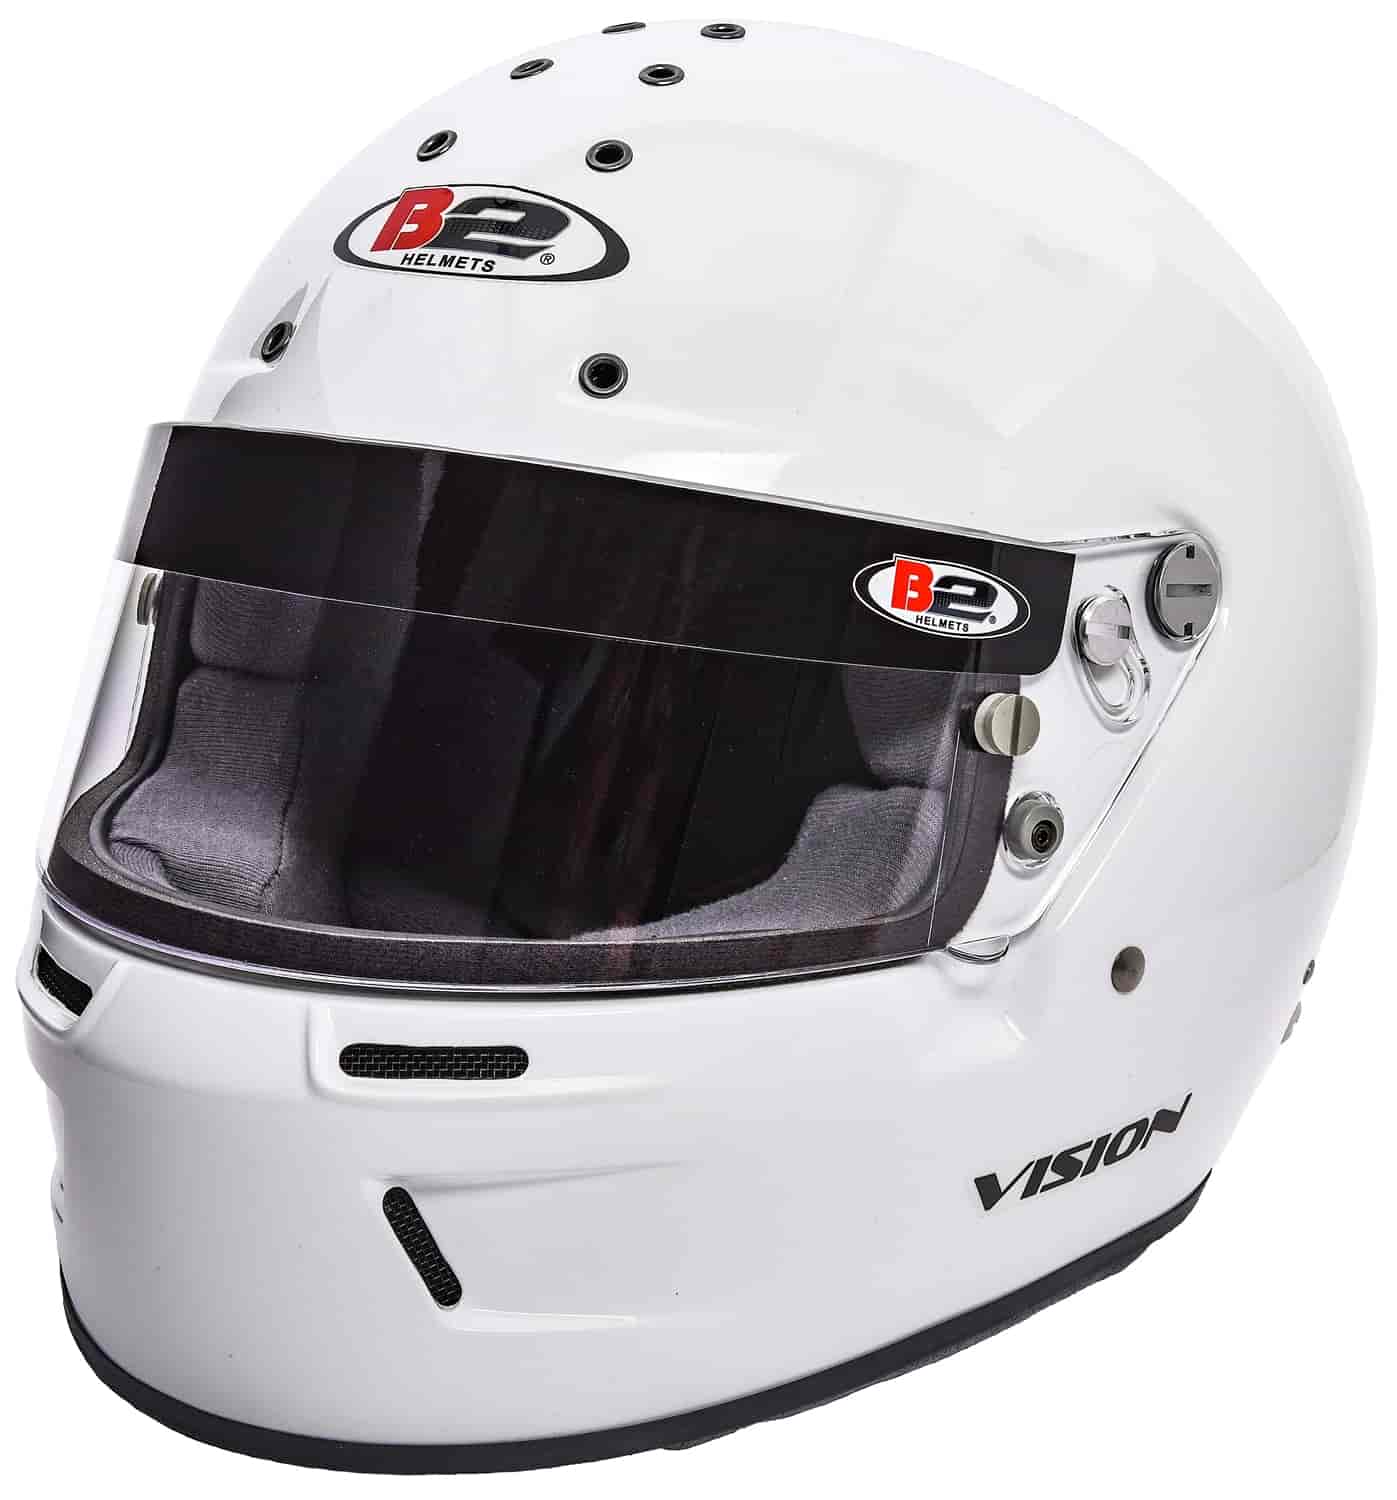 Vision Helmet White - Large